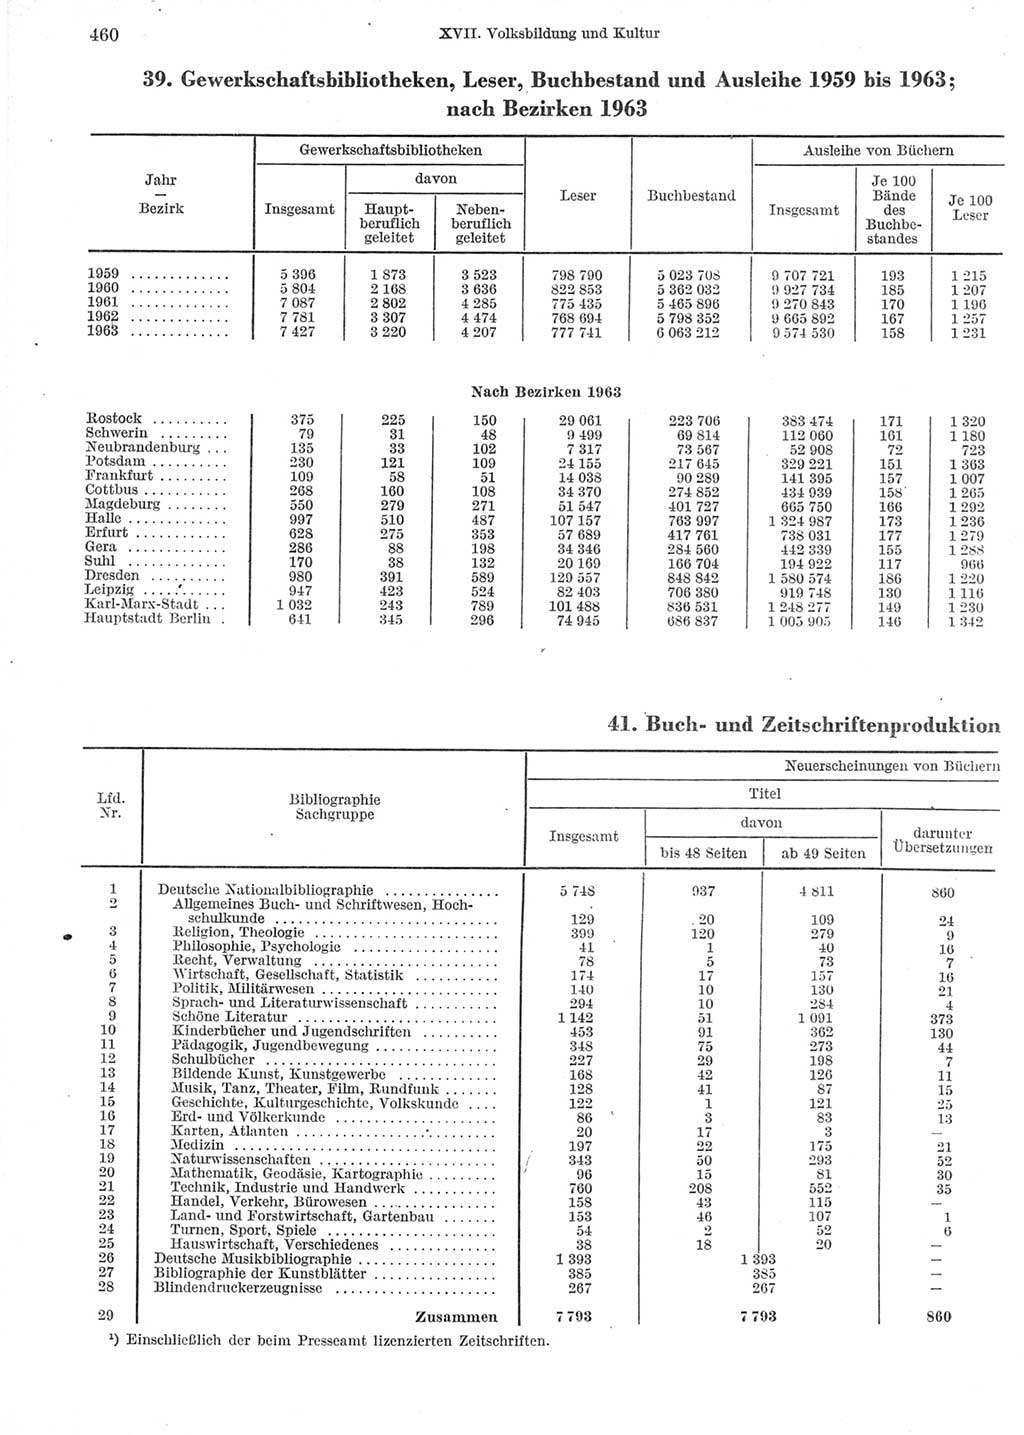 Statistisches Jahrbuch der Deutschen Demokratischen Republik (DDR) 1964, Seite 460 (Stat. Jb. DDR 1964, S. 460)